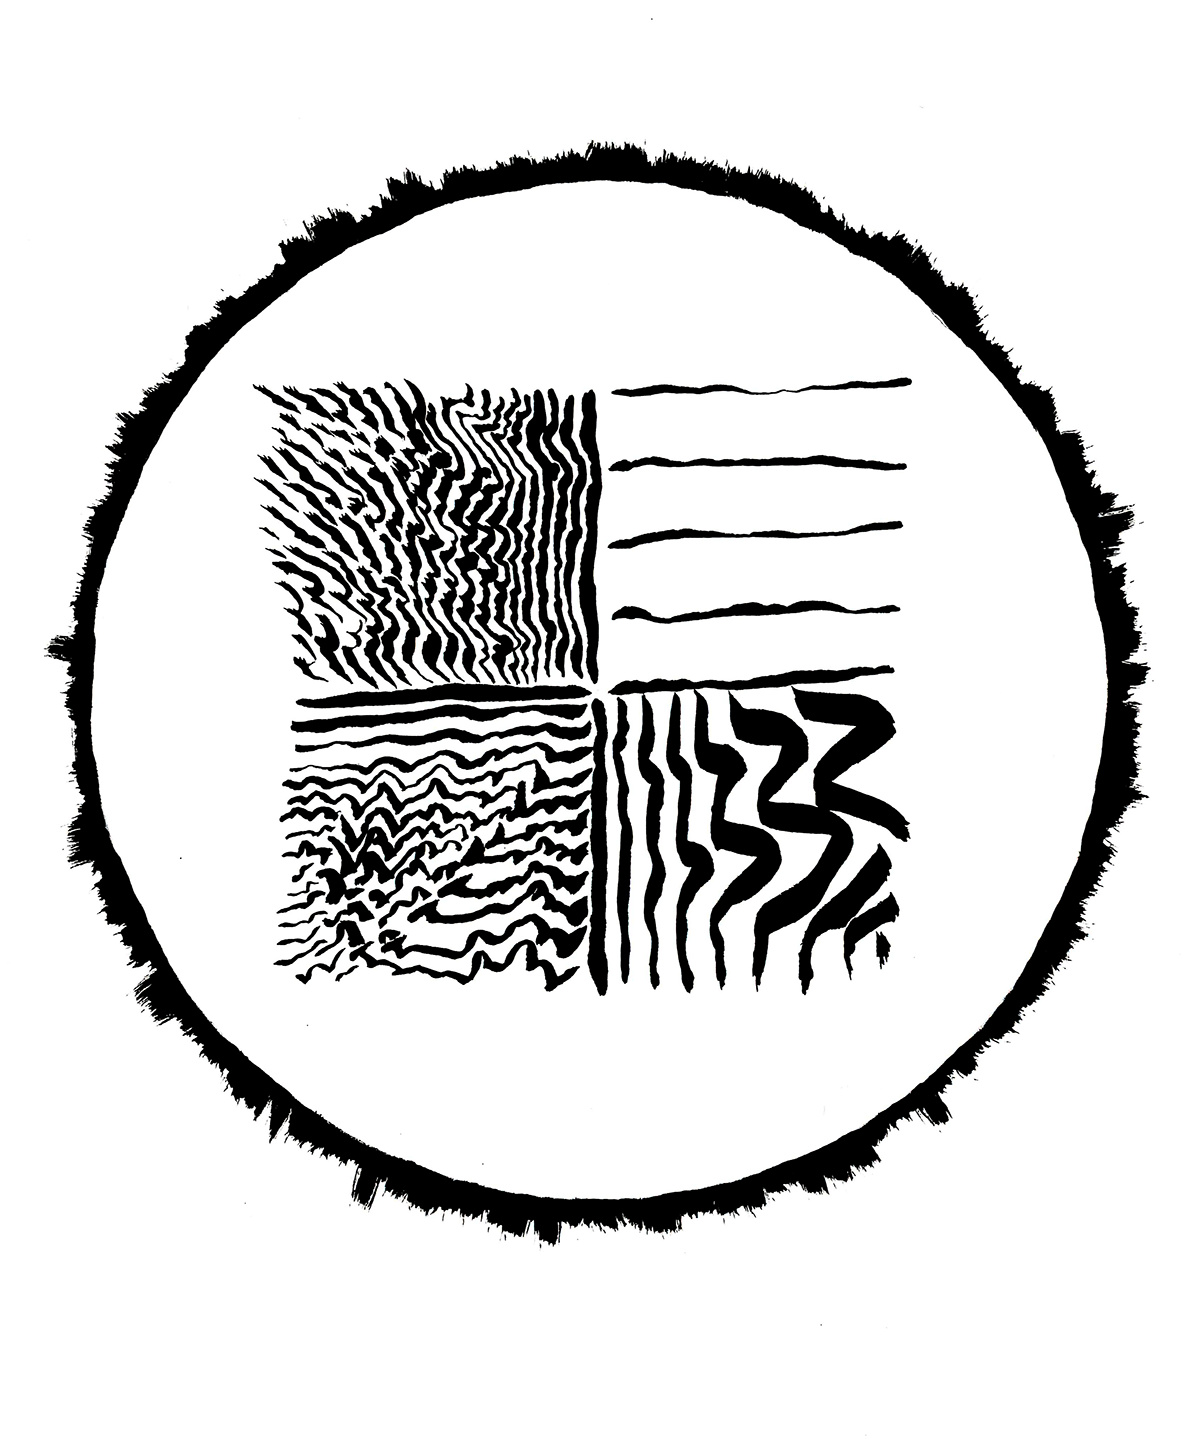 brush & ink abstract disk circle